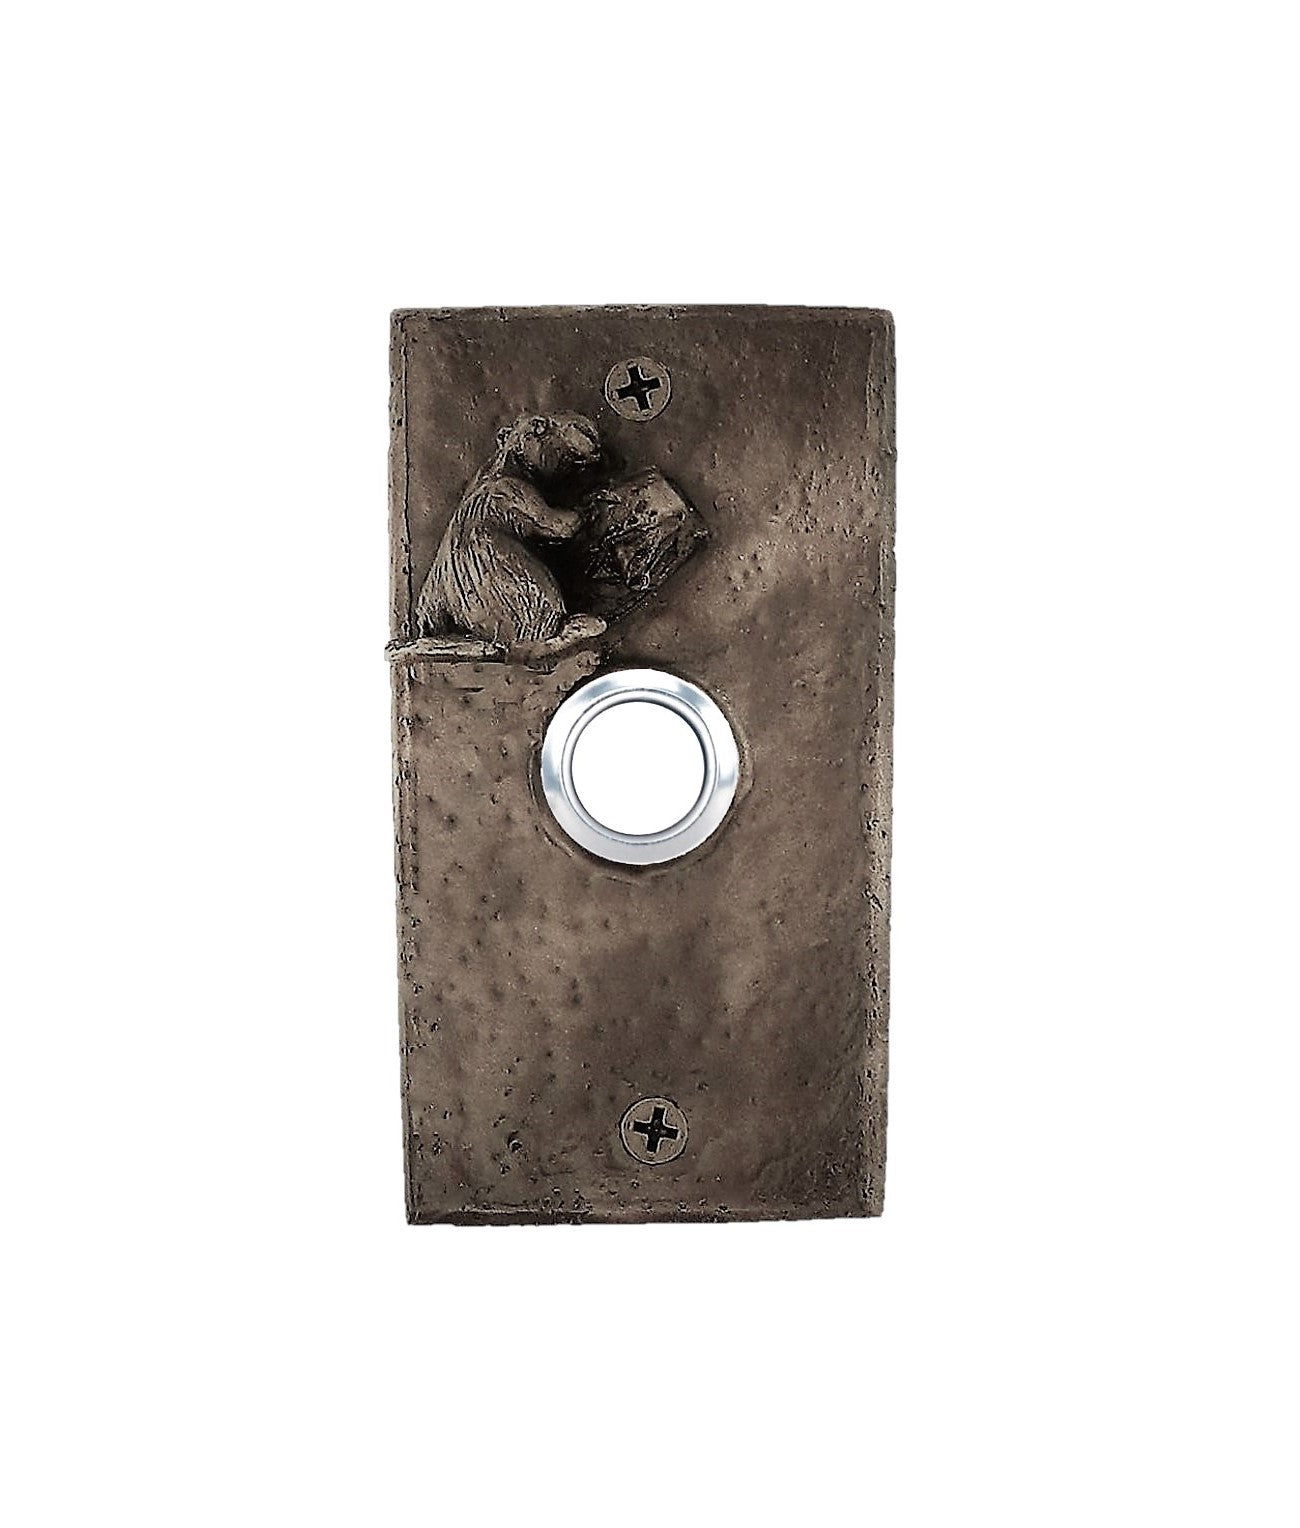 Bronze doorbell, rectangular shape with beaver